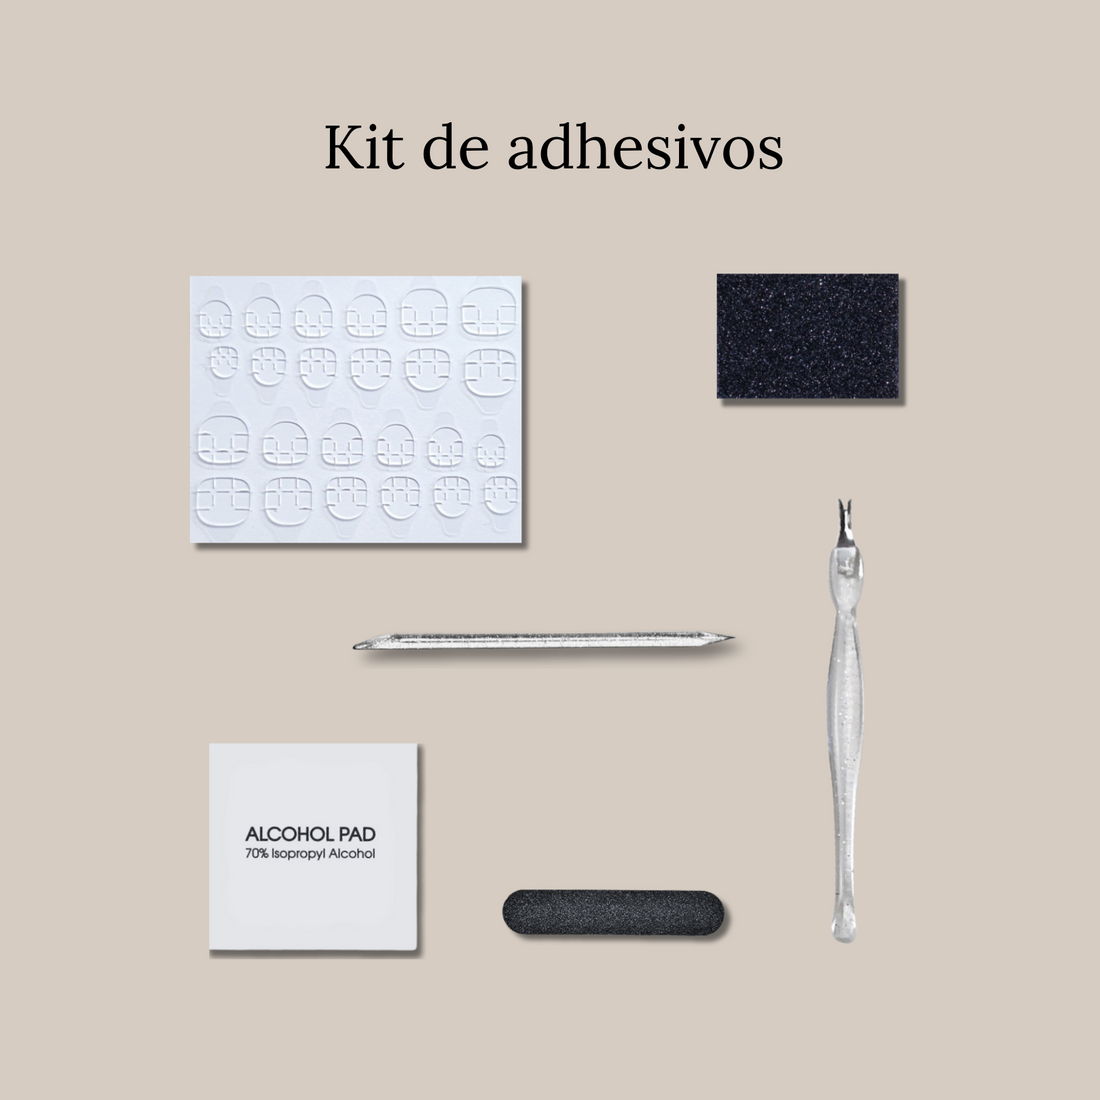 Kit de preparación con adhesivos